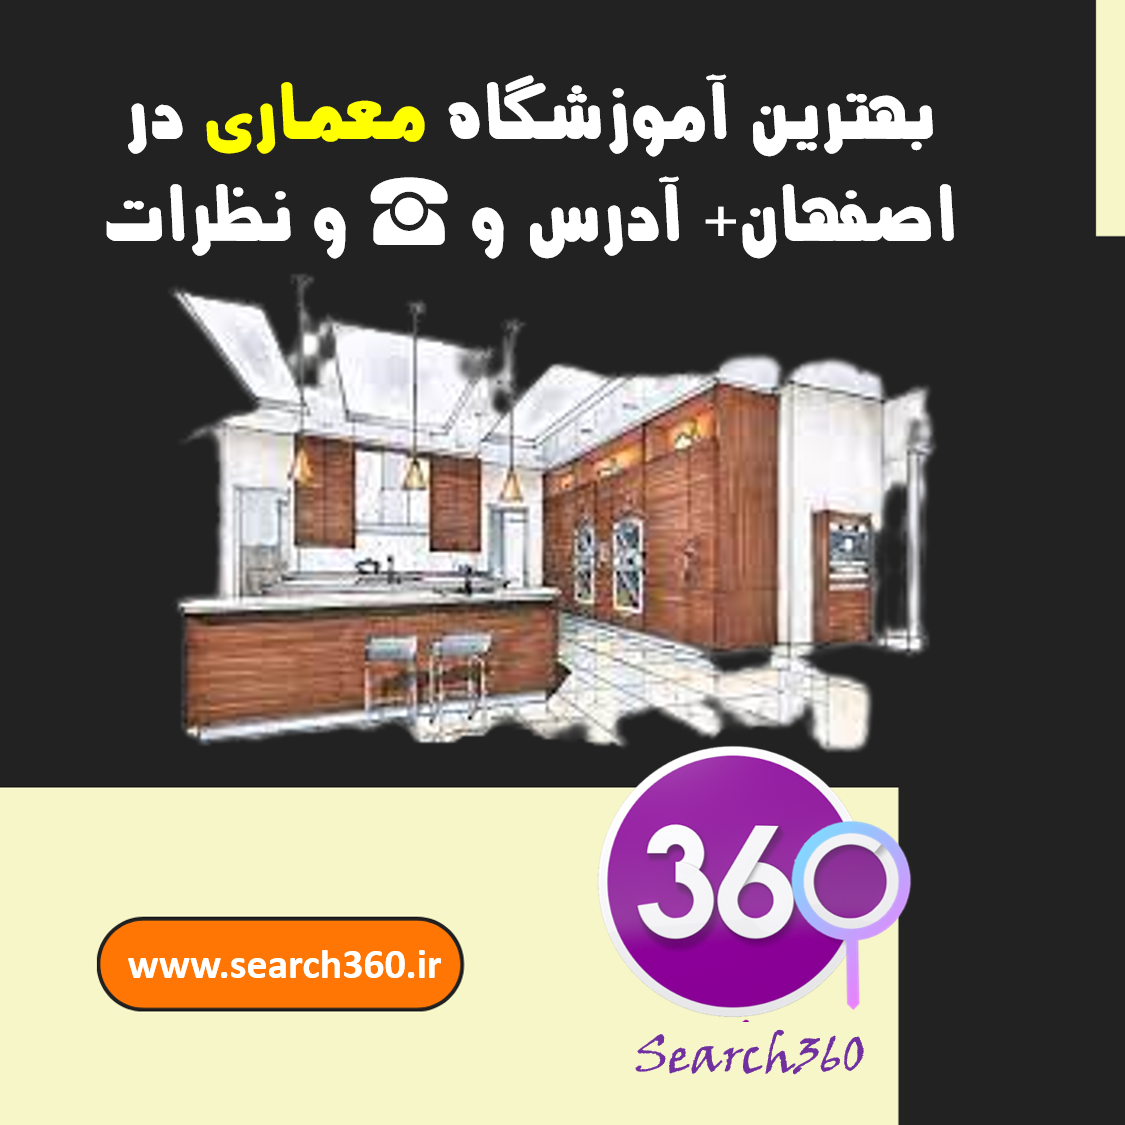 بهترین آموزشگاه دوره های معماری در اصفهان +آدرس و☎️و نظرات